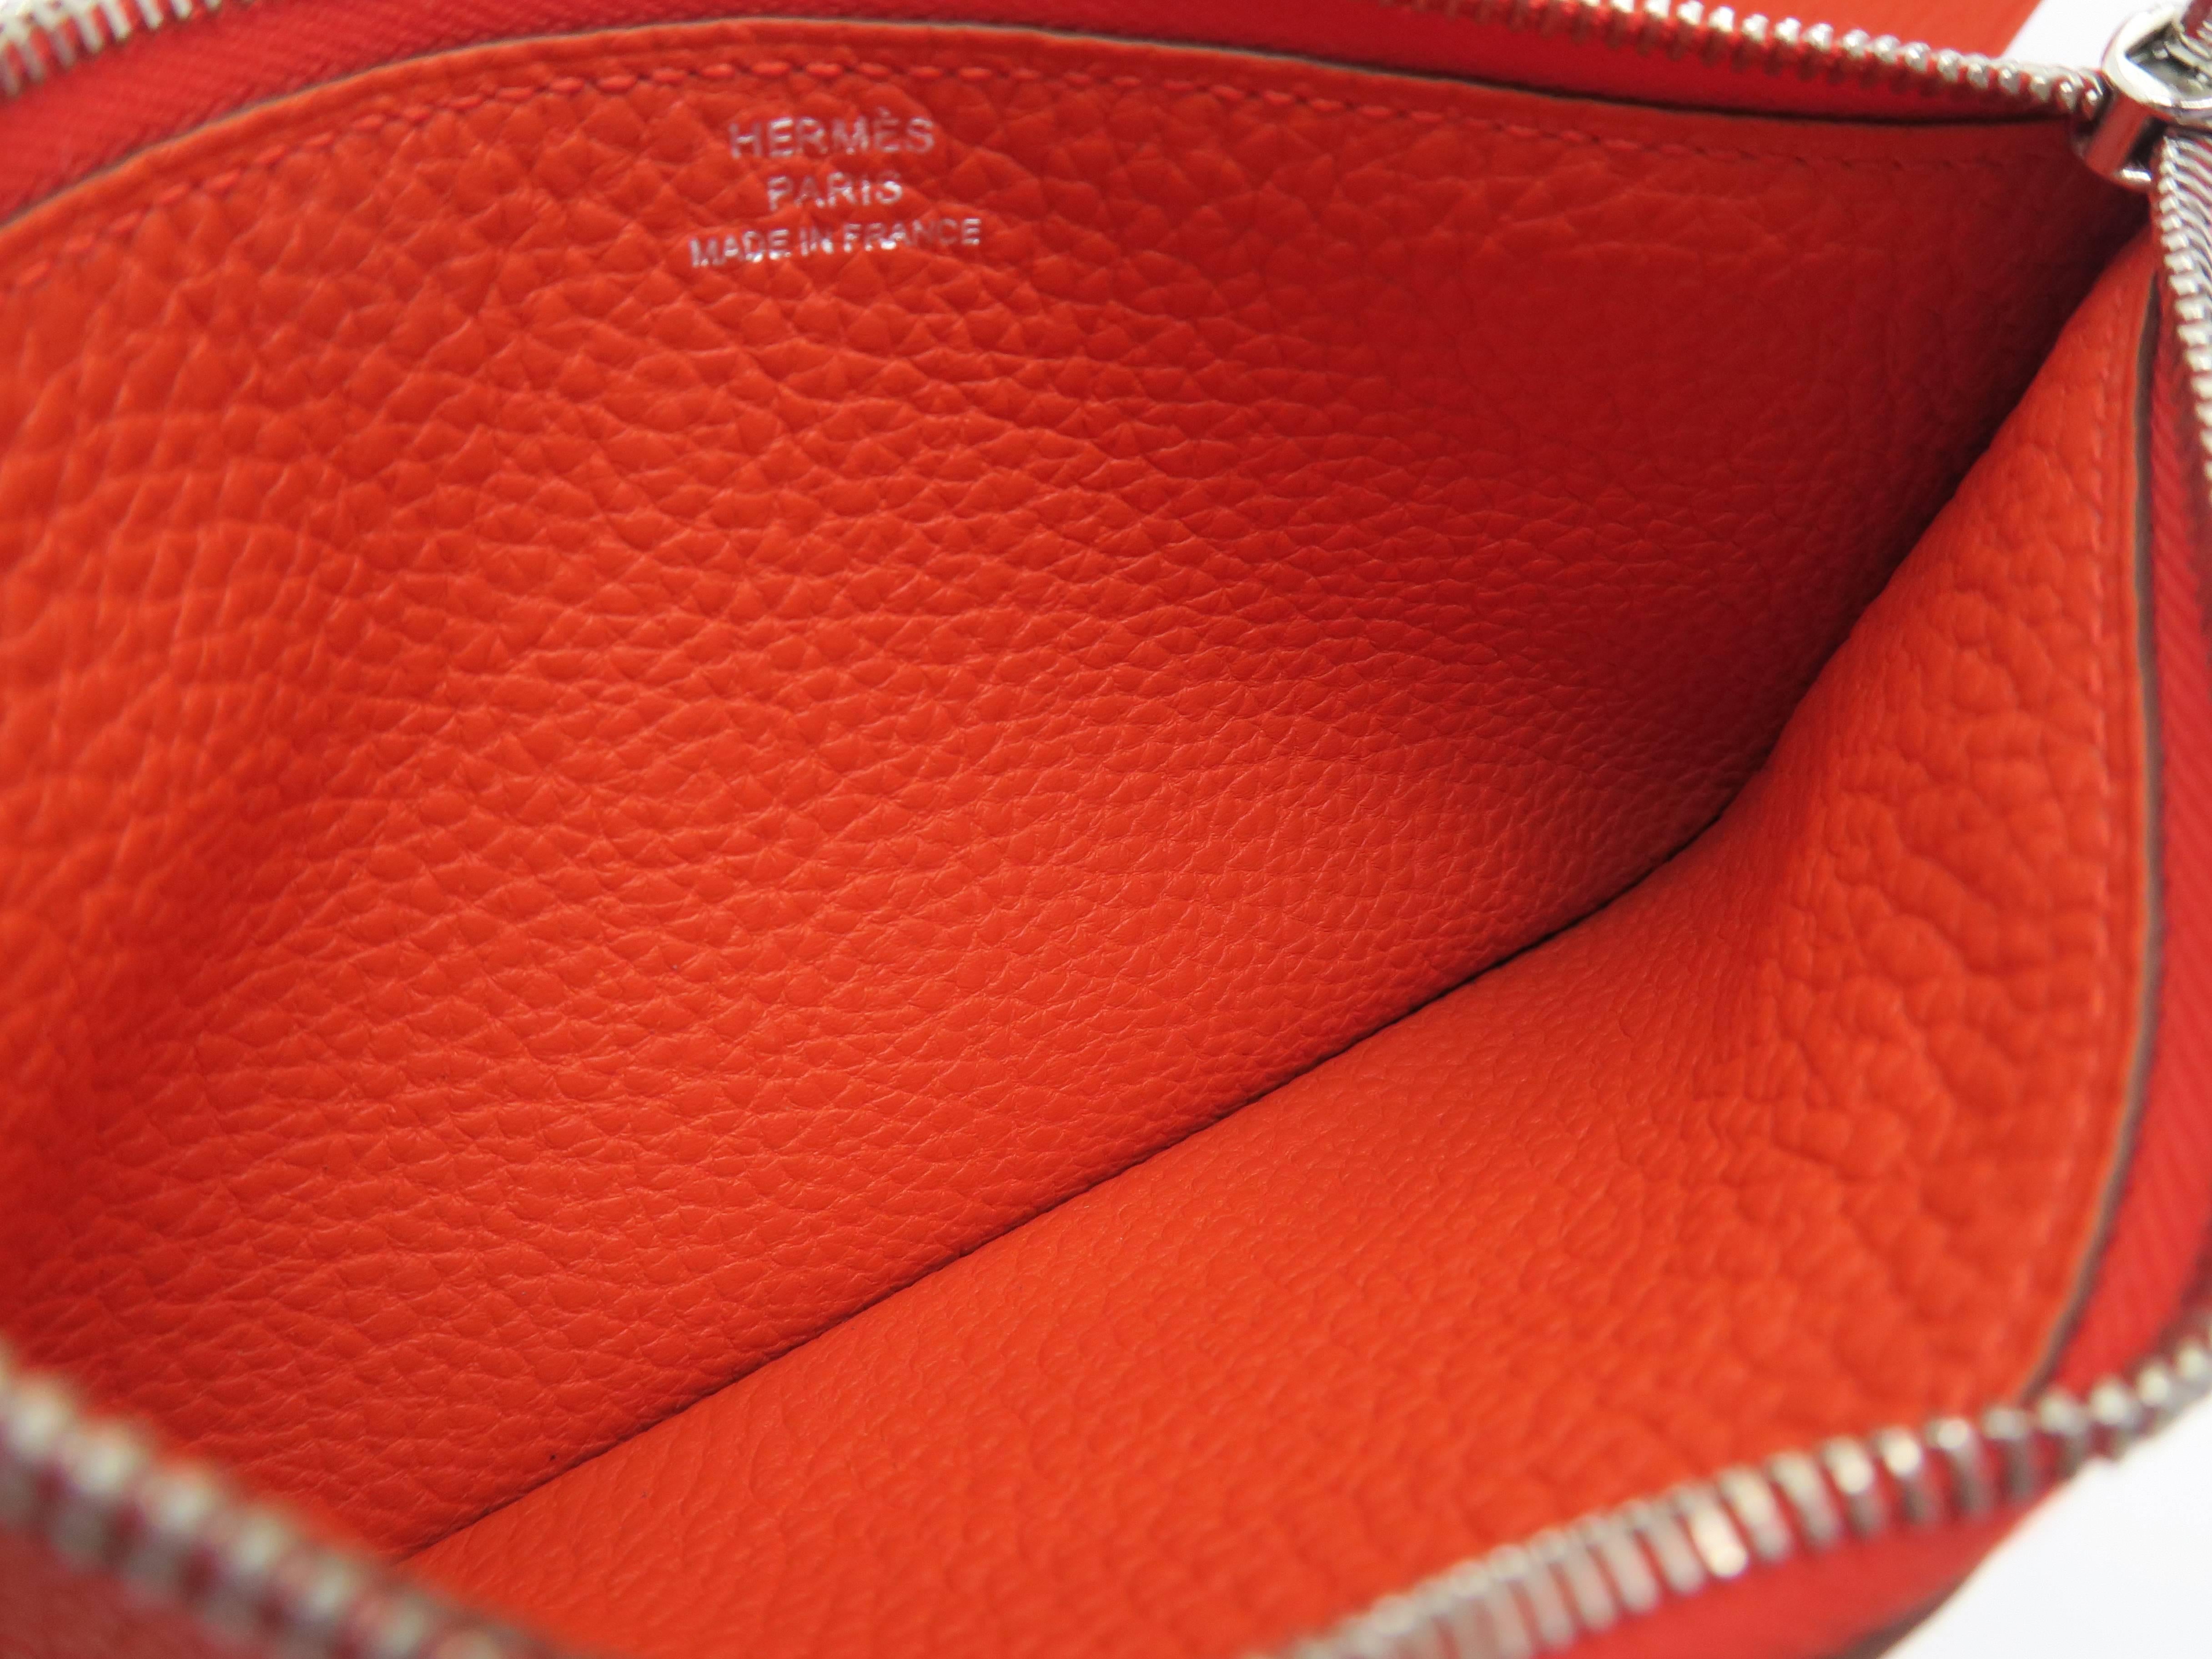 Red Hermes Dogon GM Orange / Capucine Togo Leather SHW Long Wallet For Sale